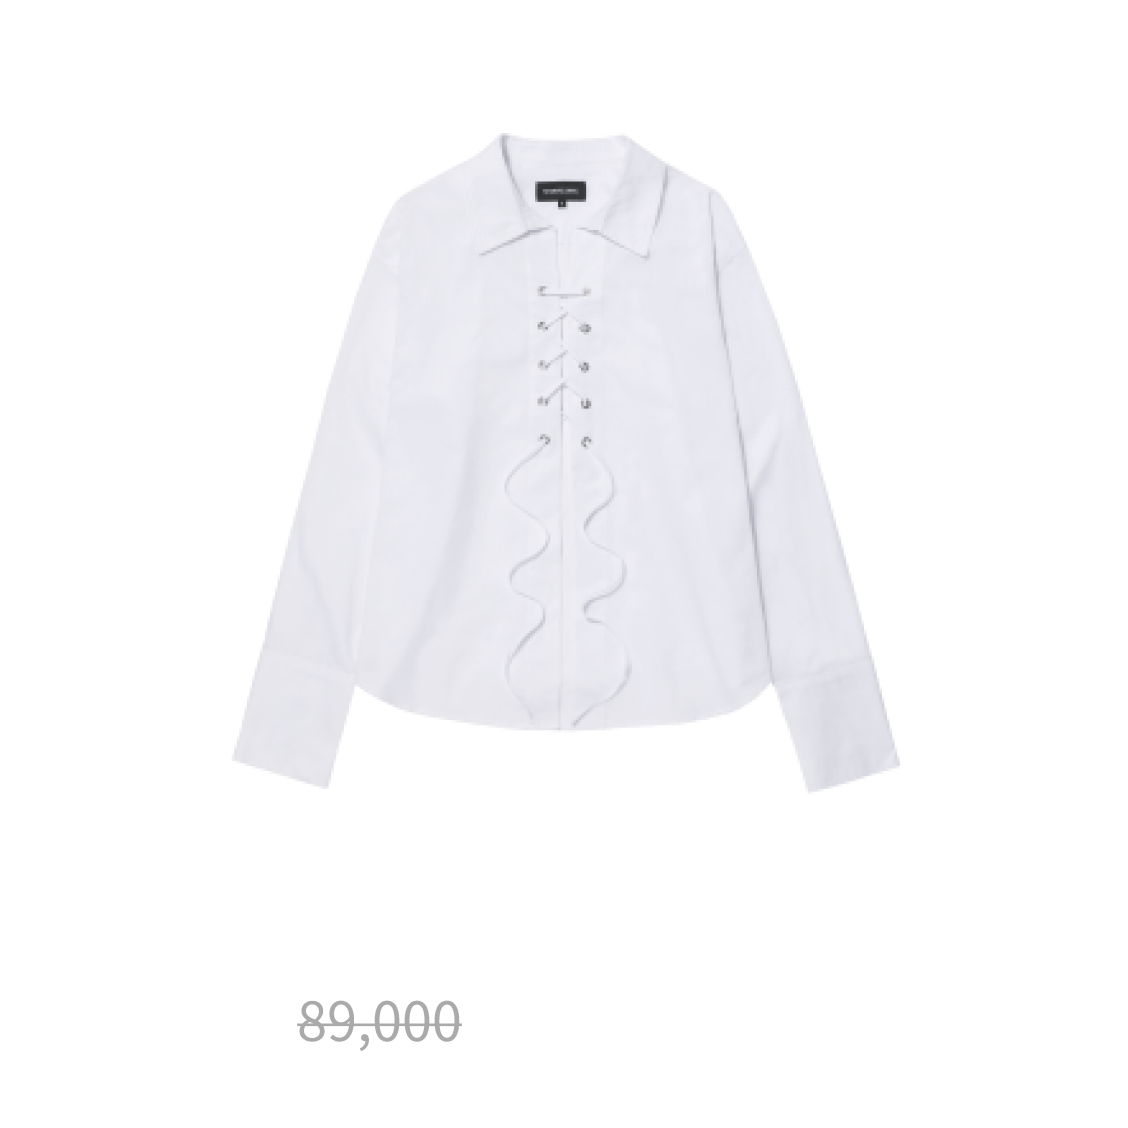 Eyelet lace-up shirt - IVORY